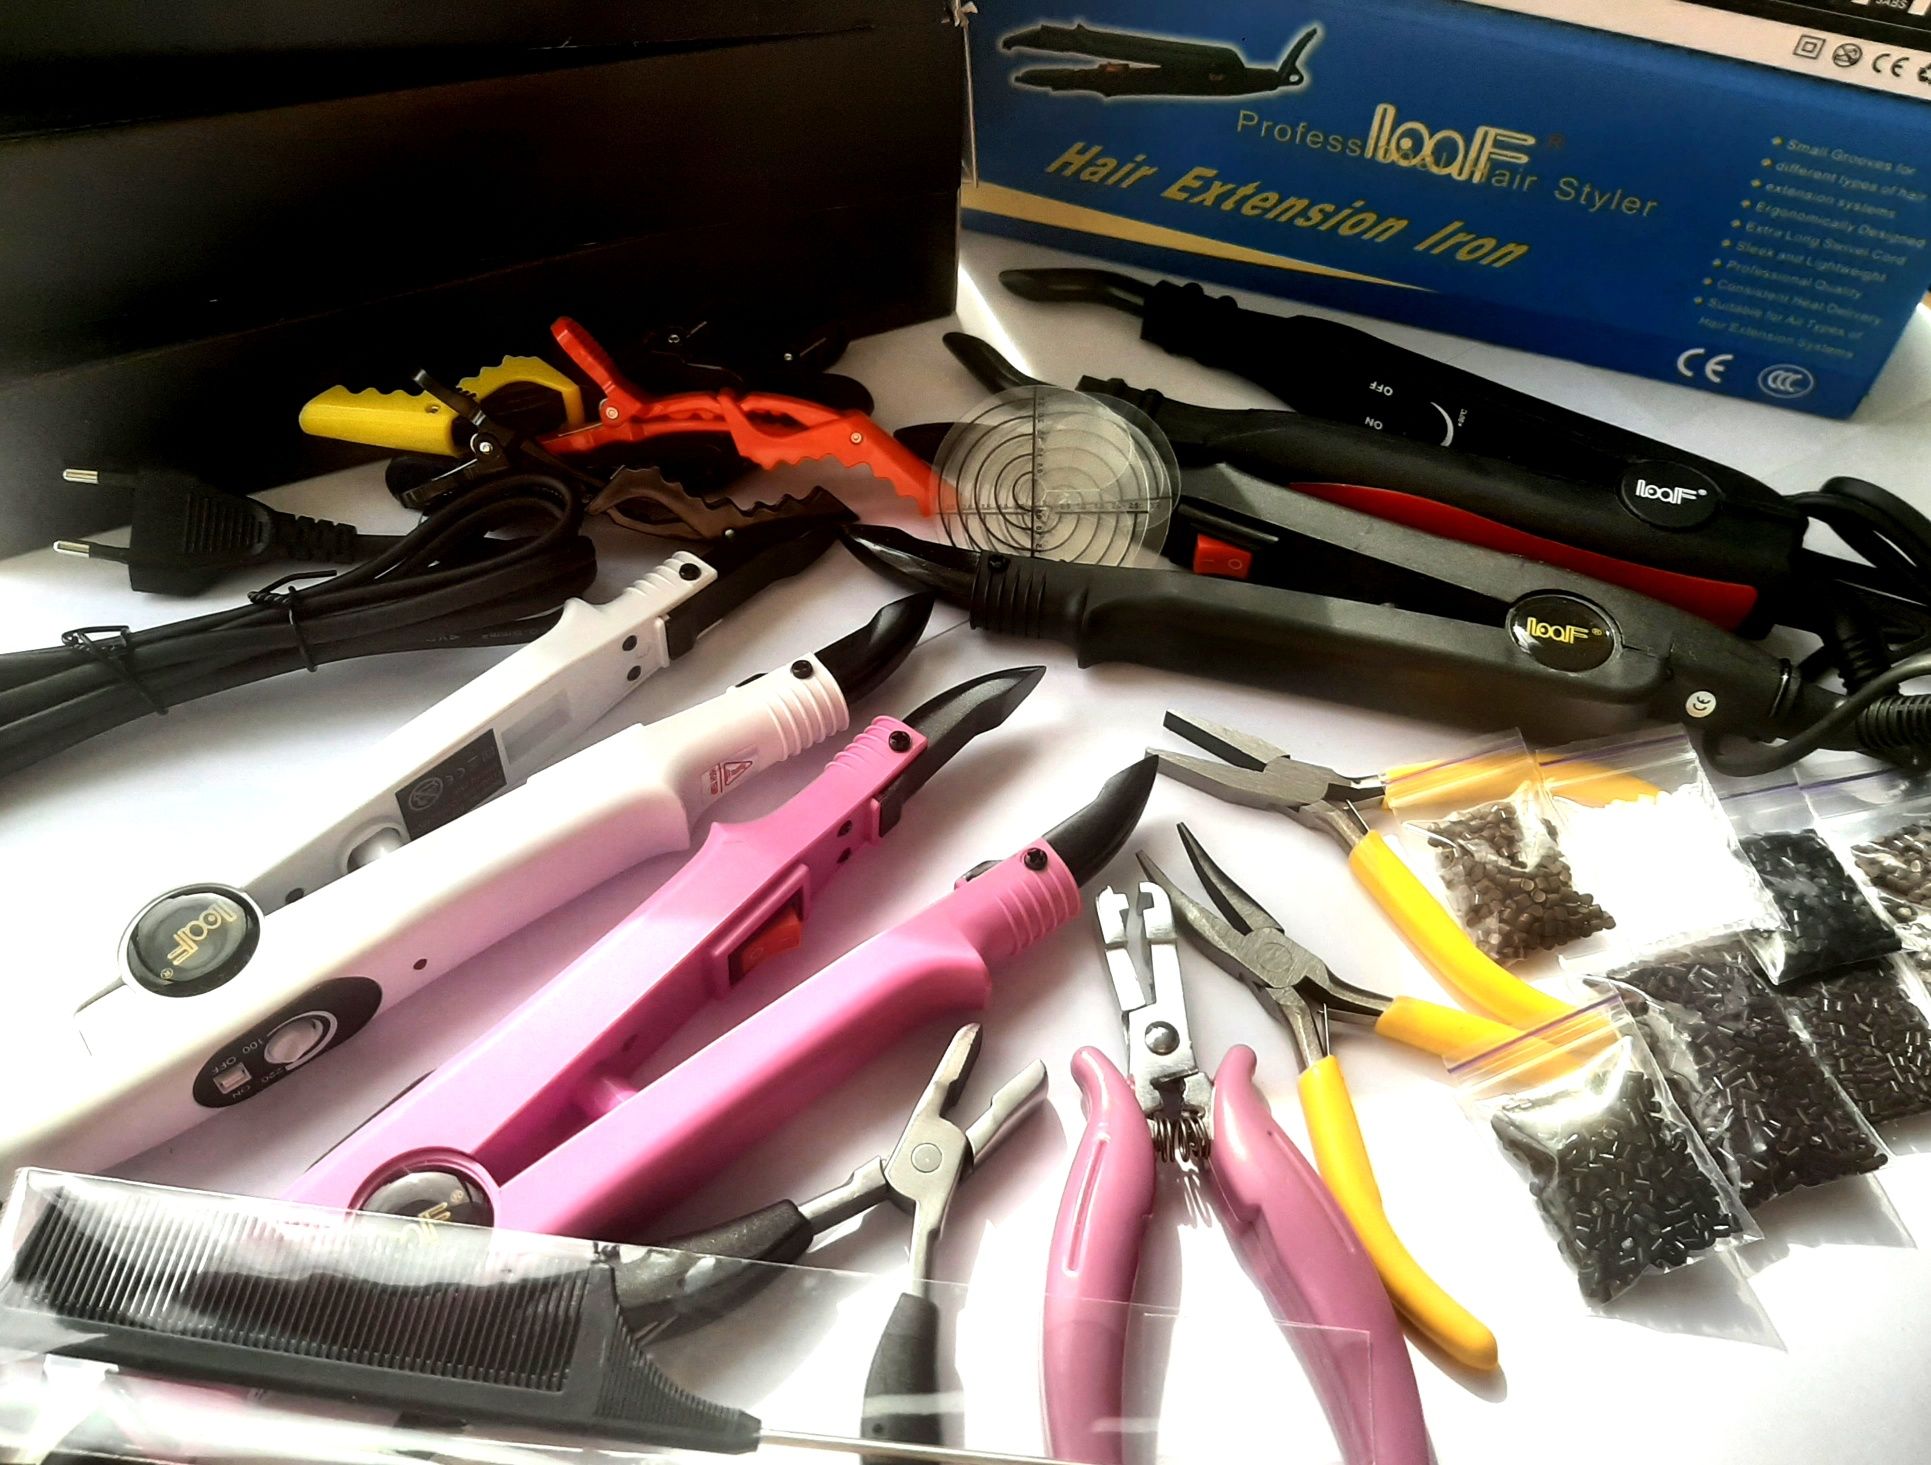 Щипцы для наращивания волос, материалы, инструменты, наборы

Абсолютно